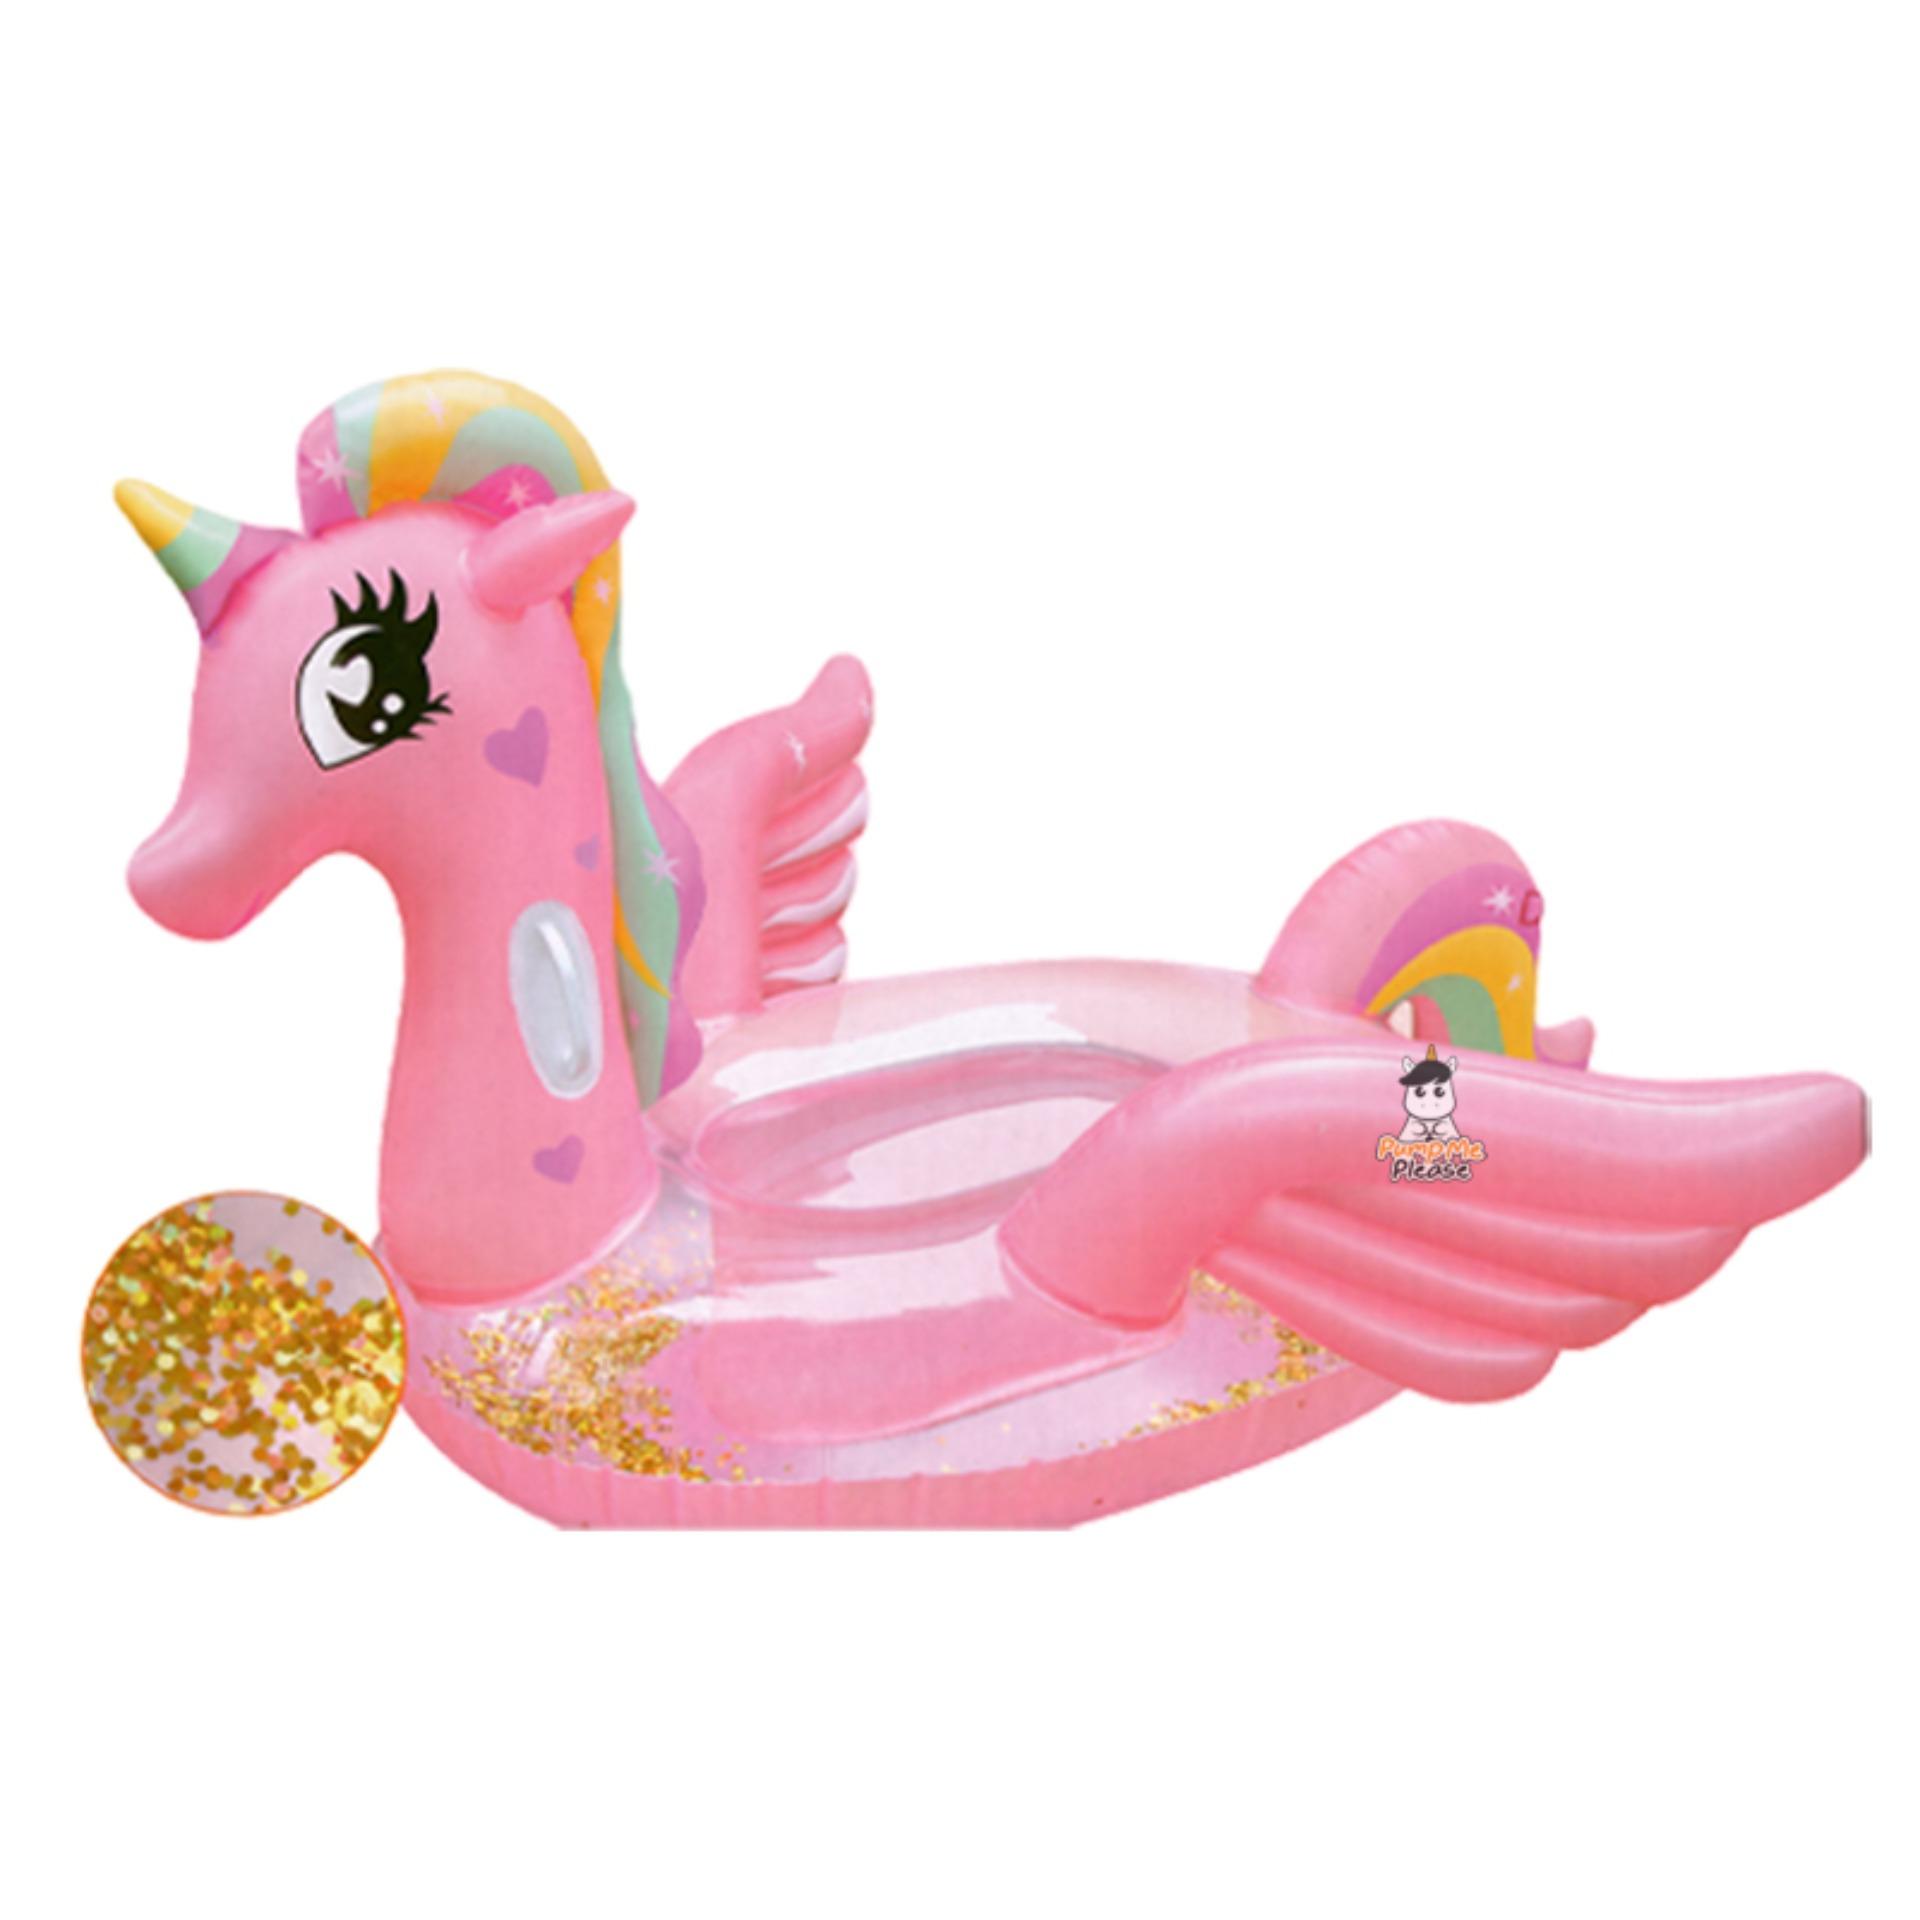 แพยาง Pony Glitter Pink Medium Size ห่วงยาง โพนี่ กลิสเตอร์ ชมพู แฟนซี ขนาด 120 cm